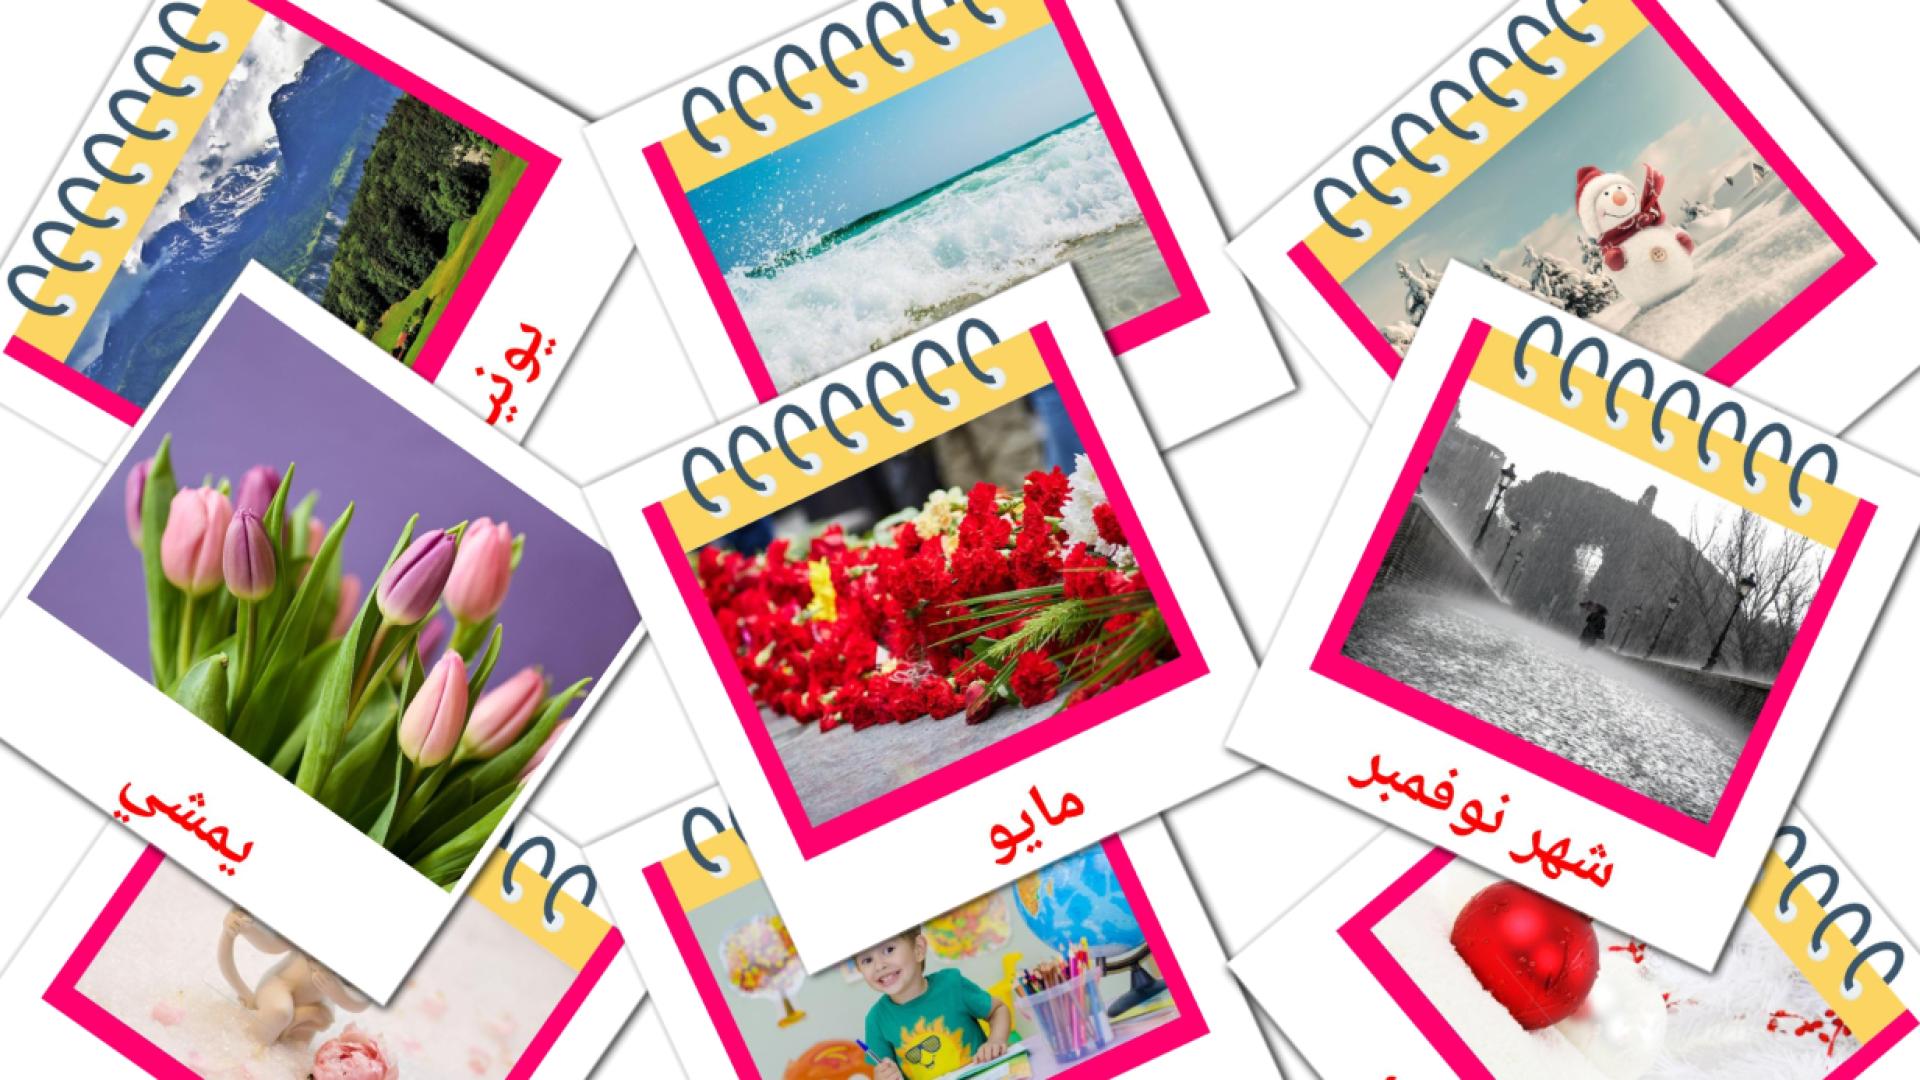 Arabisch الرزنامةe Vokabelkarteikarten